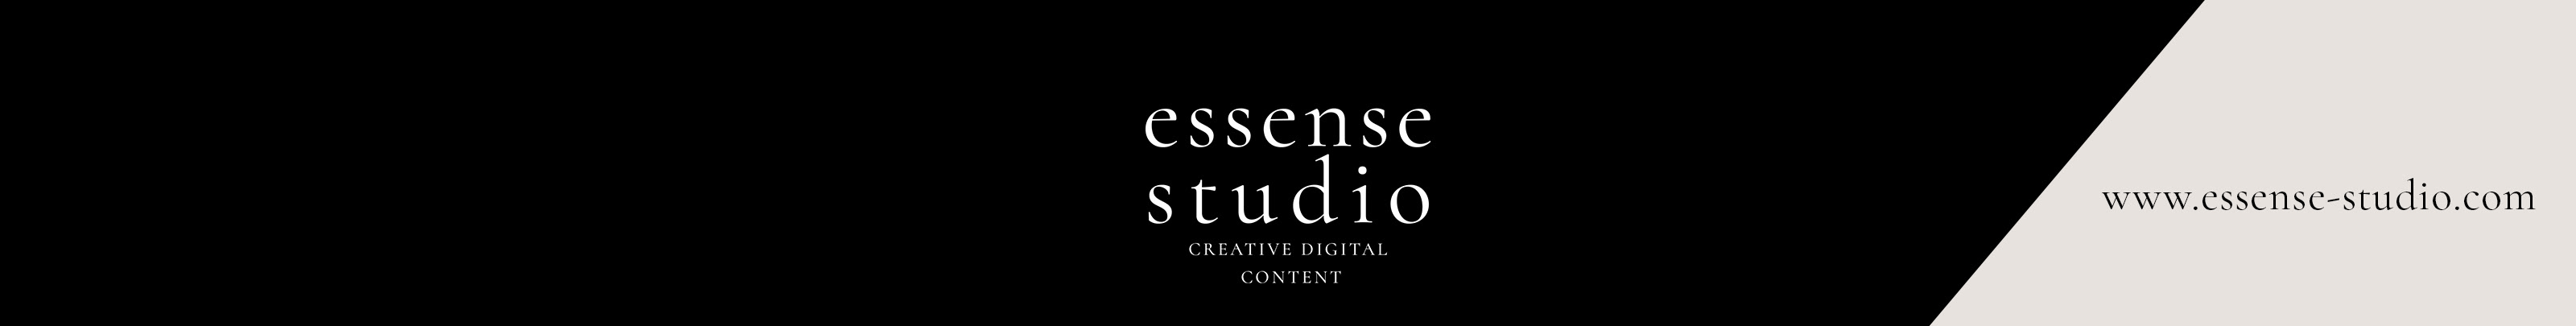 Essense Studio's profile banner